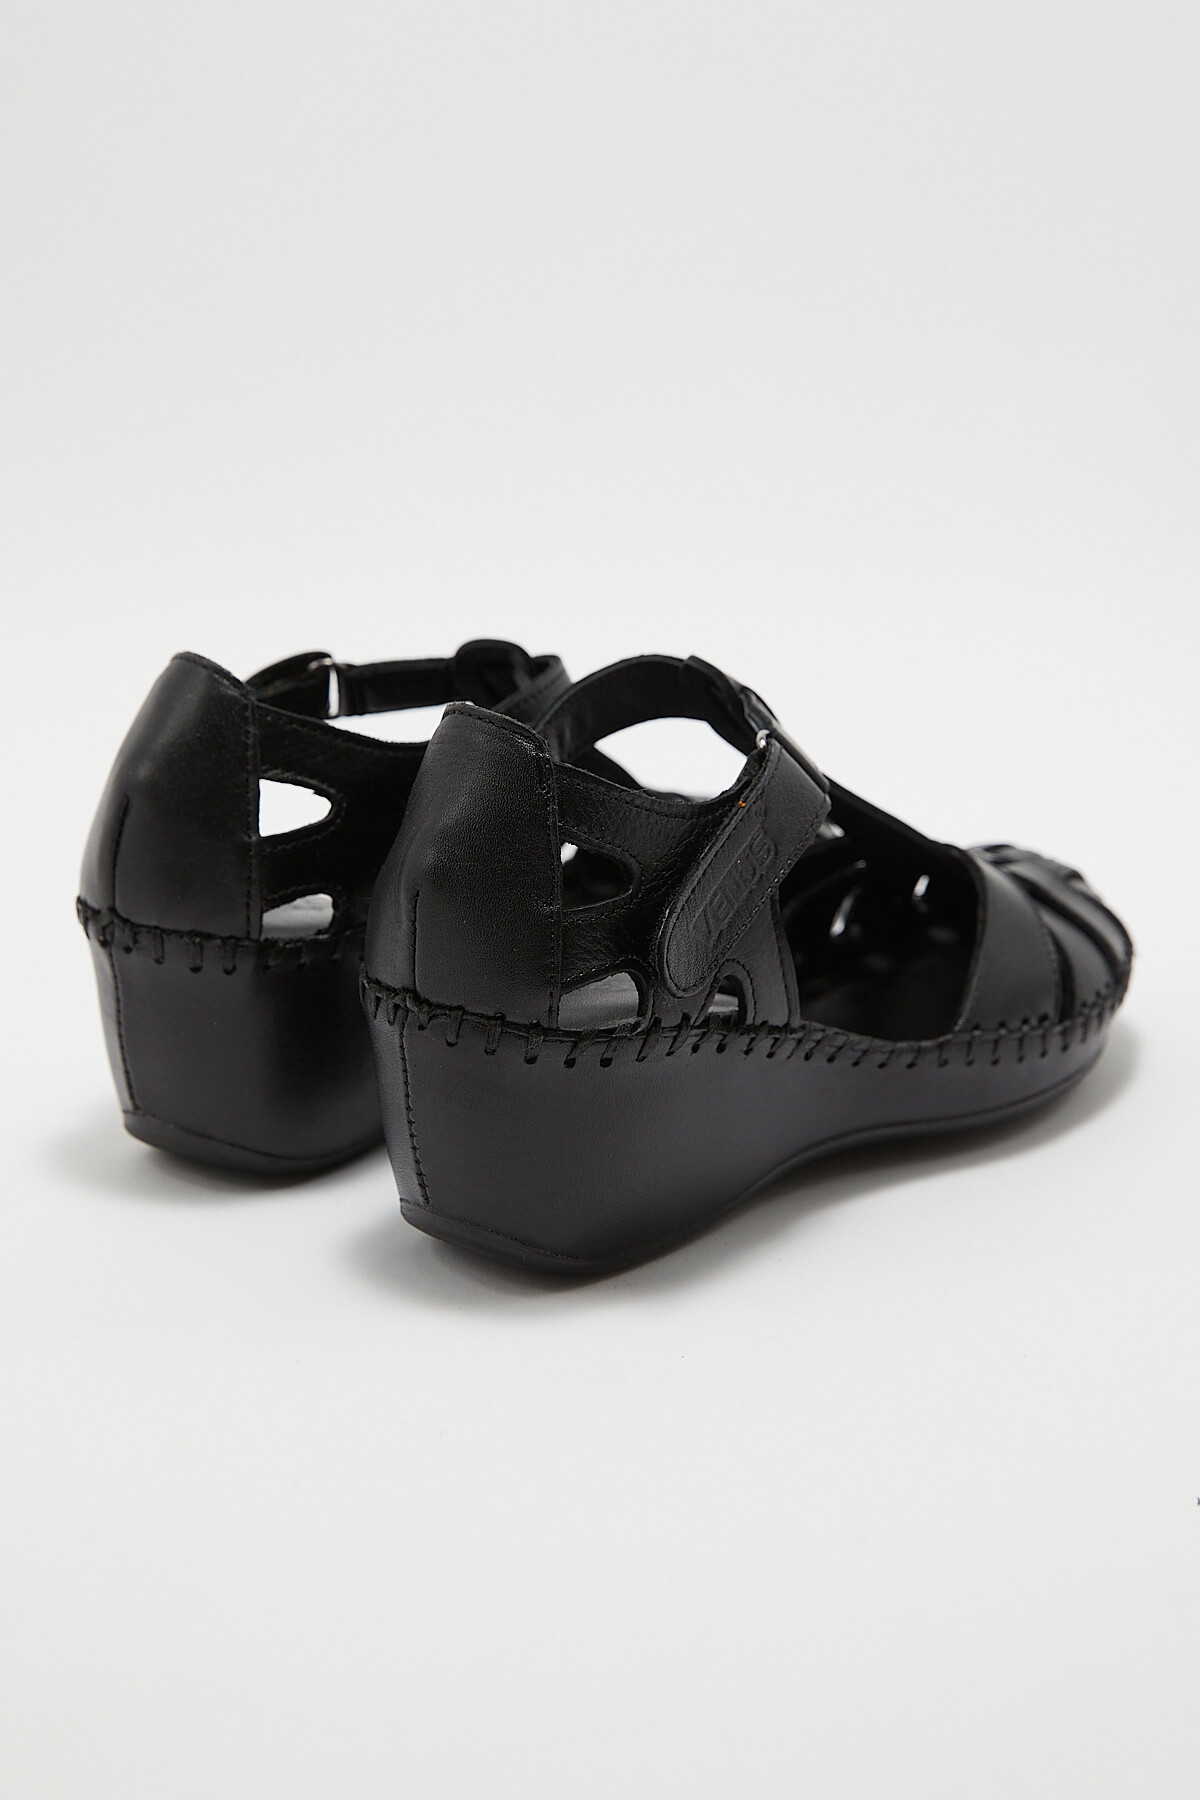 Kadın Comfort Deri Sandalet Siyah 18791382